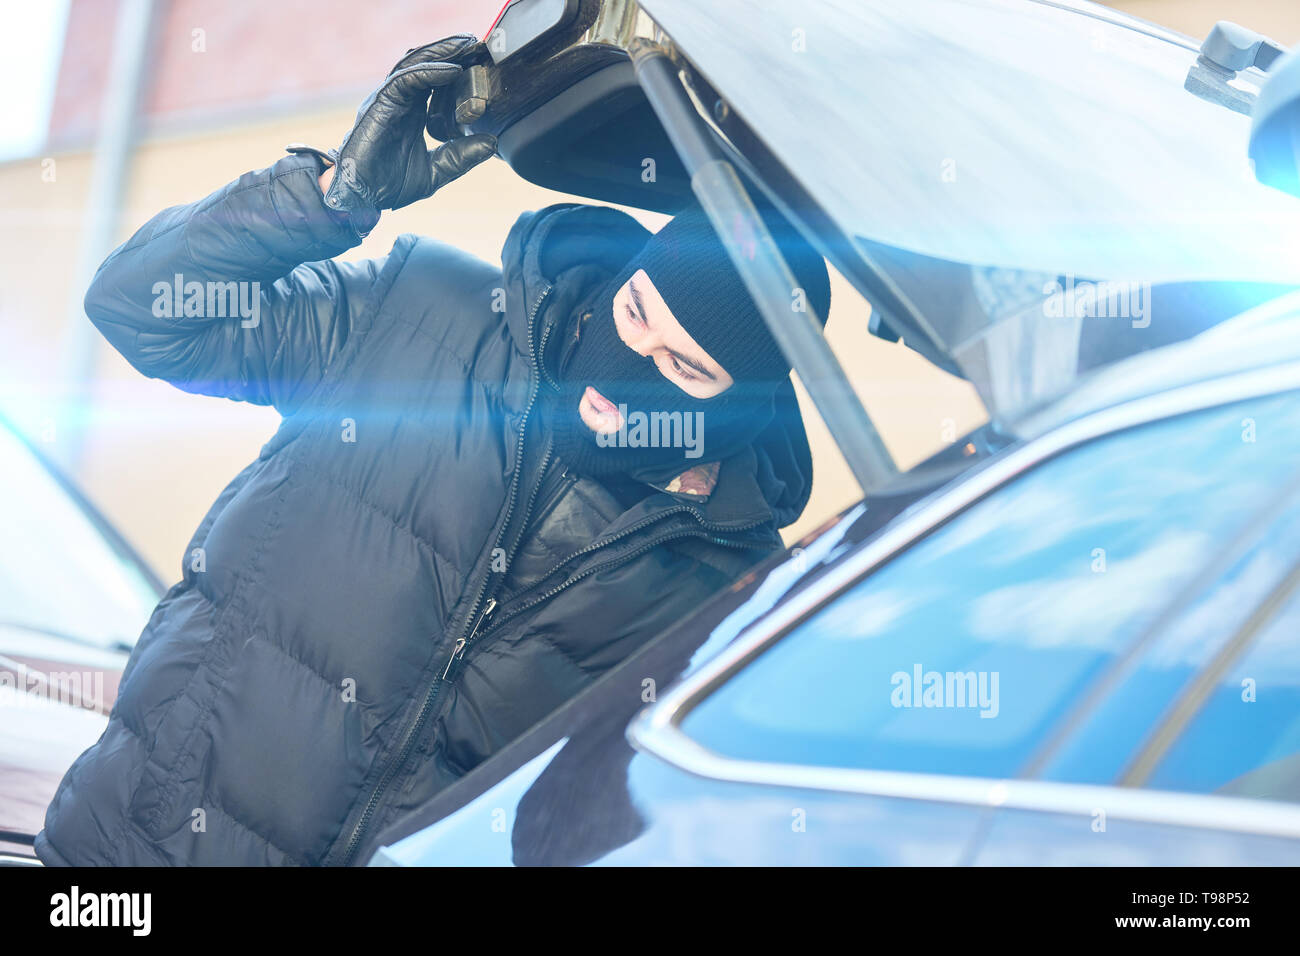 Polizist eines SEK spezial Einheit in Aktion auf den Stamm eines zivilen Fahrzeug Stockfoto